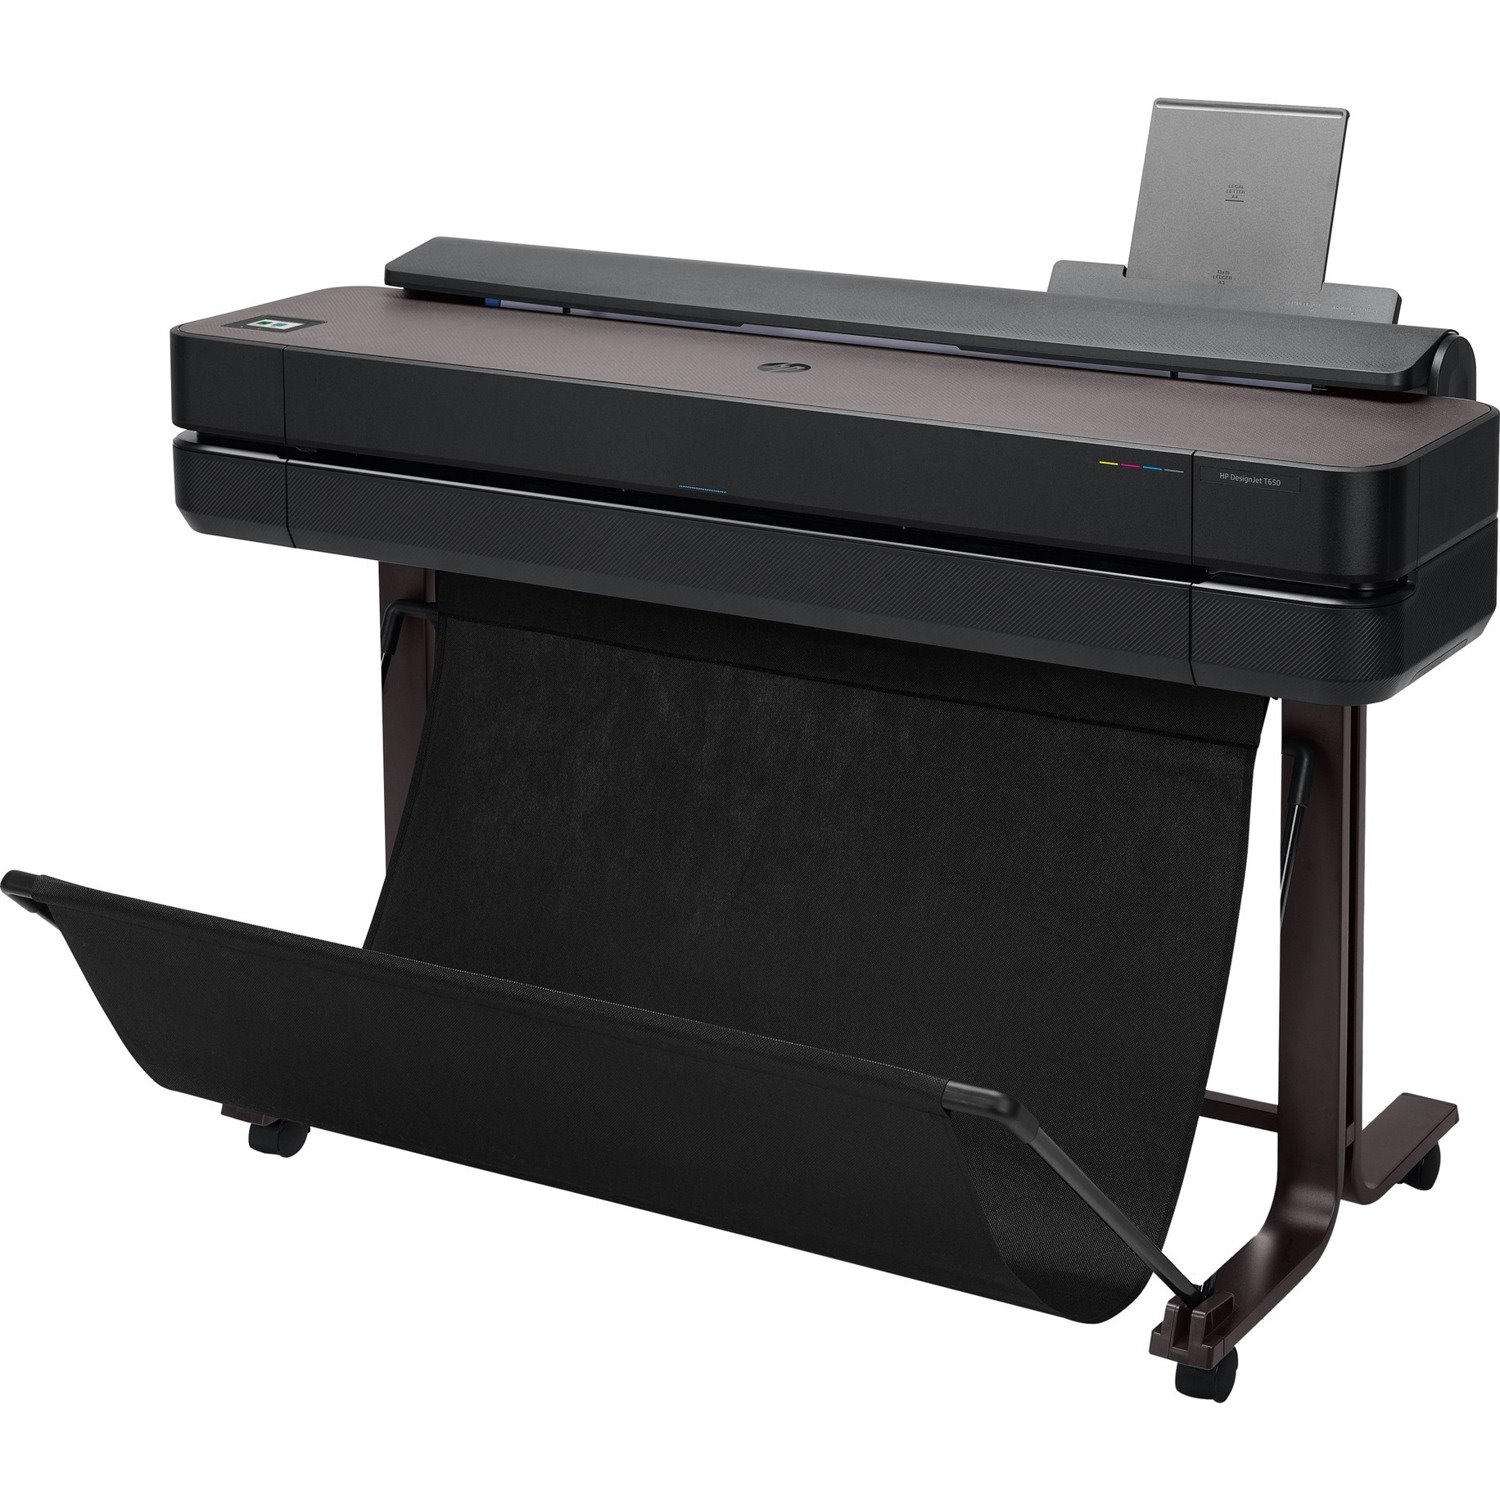 HP Designjet T650 Inkjet Large Format Printer - 35.98" Print Width - Color